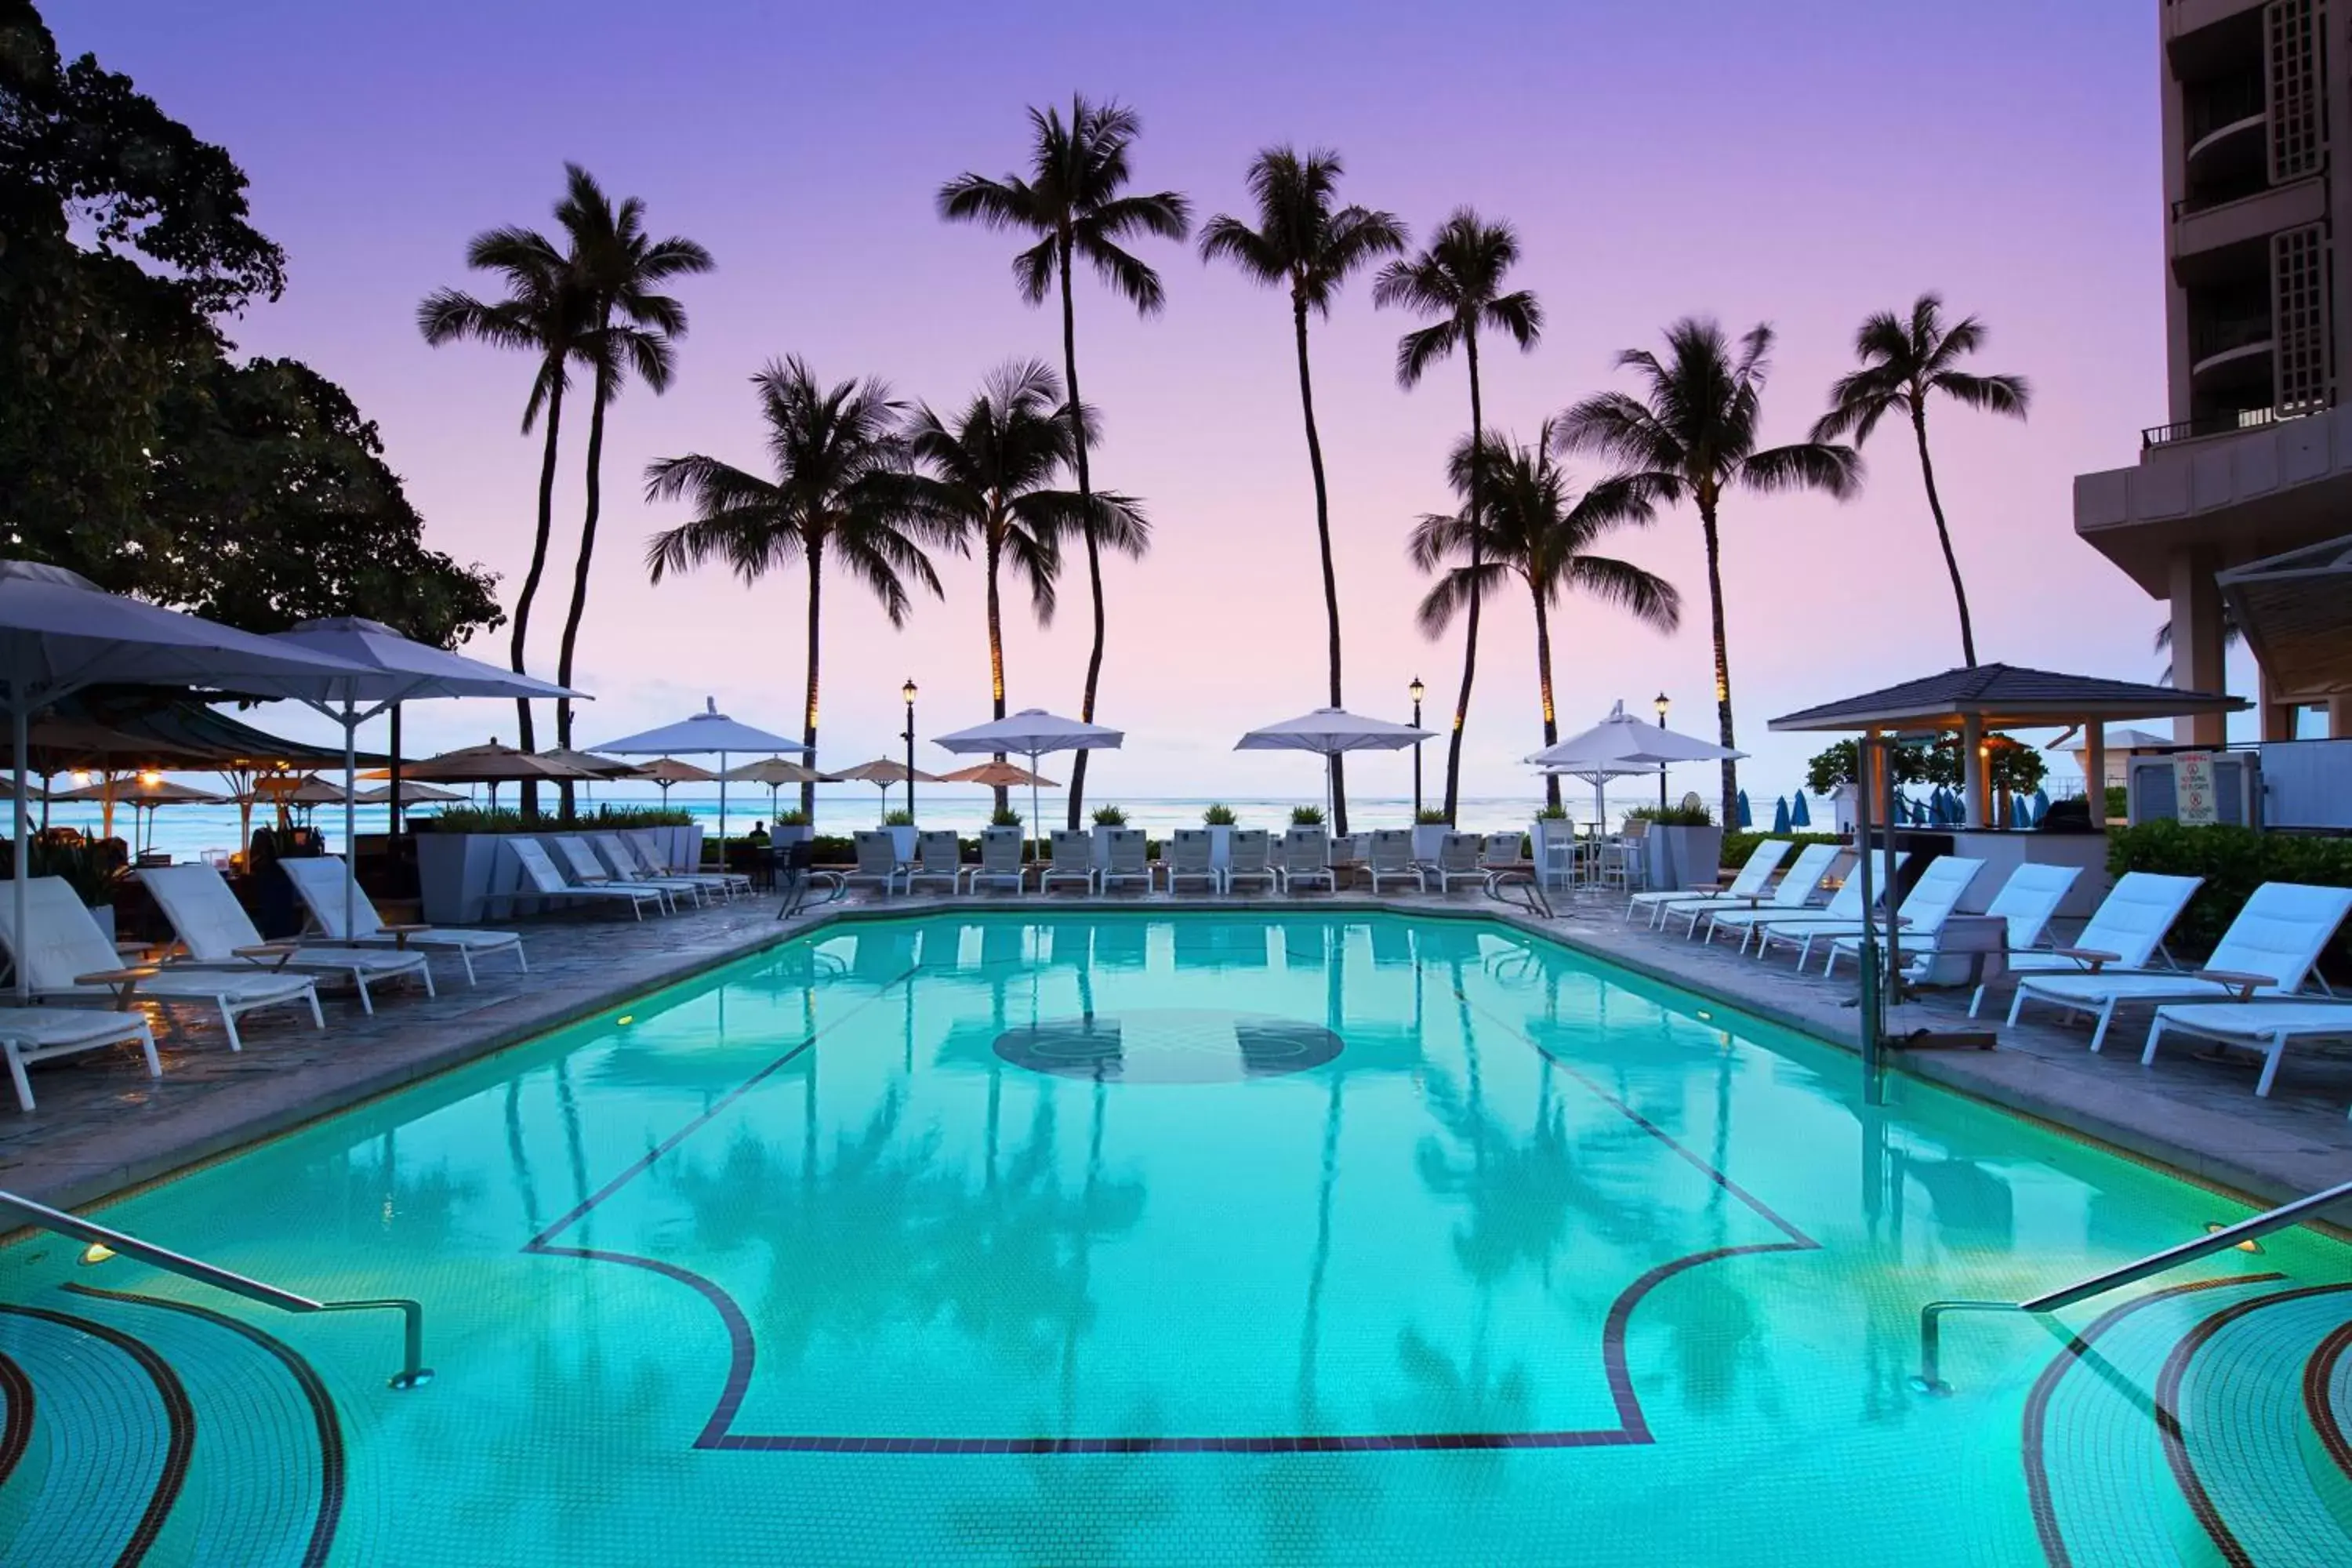 Swimming Pool in Moana Surfrider, A Westin Resort & Spa, Waikiki Beach